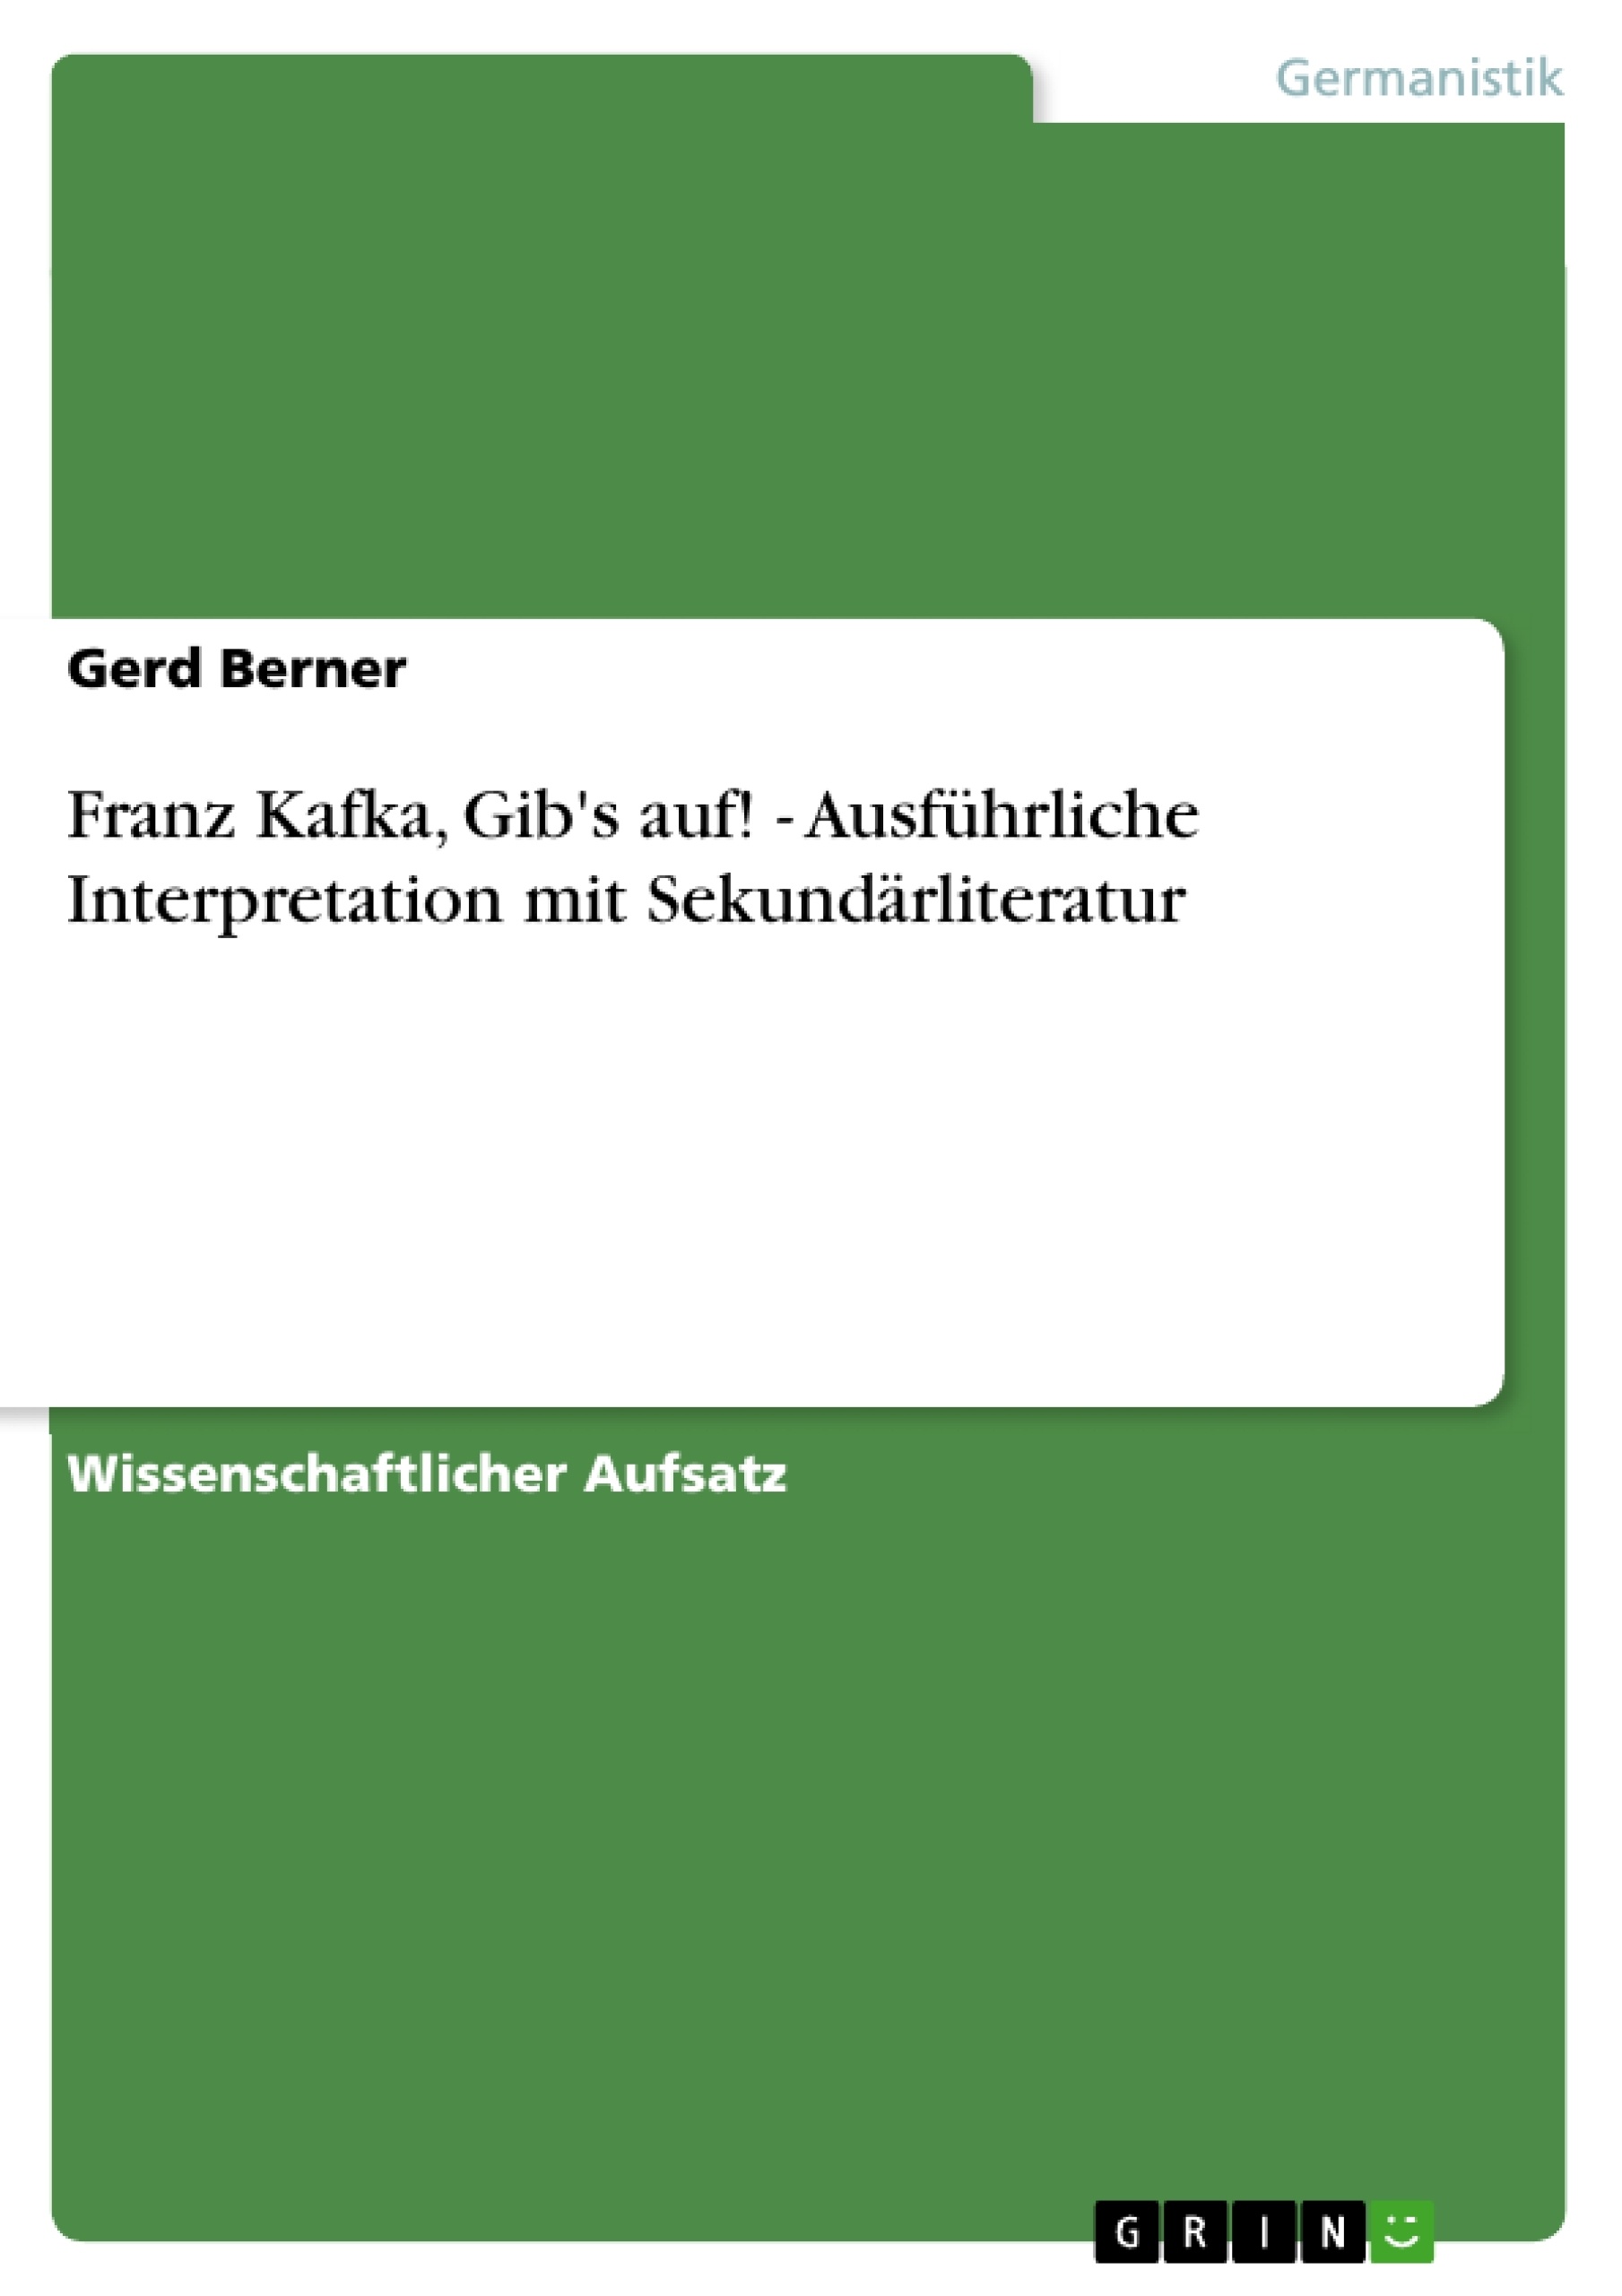 Title: Franz Kafka, Gib's auf! - Ausführliche Interpretation mit Sekundärliteratur